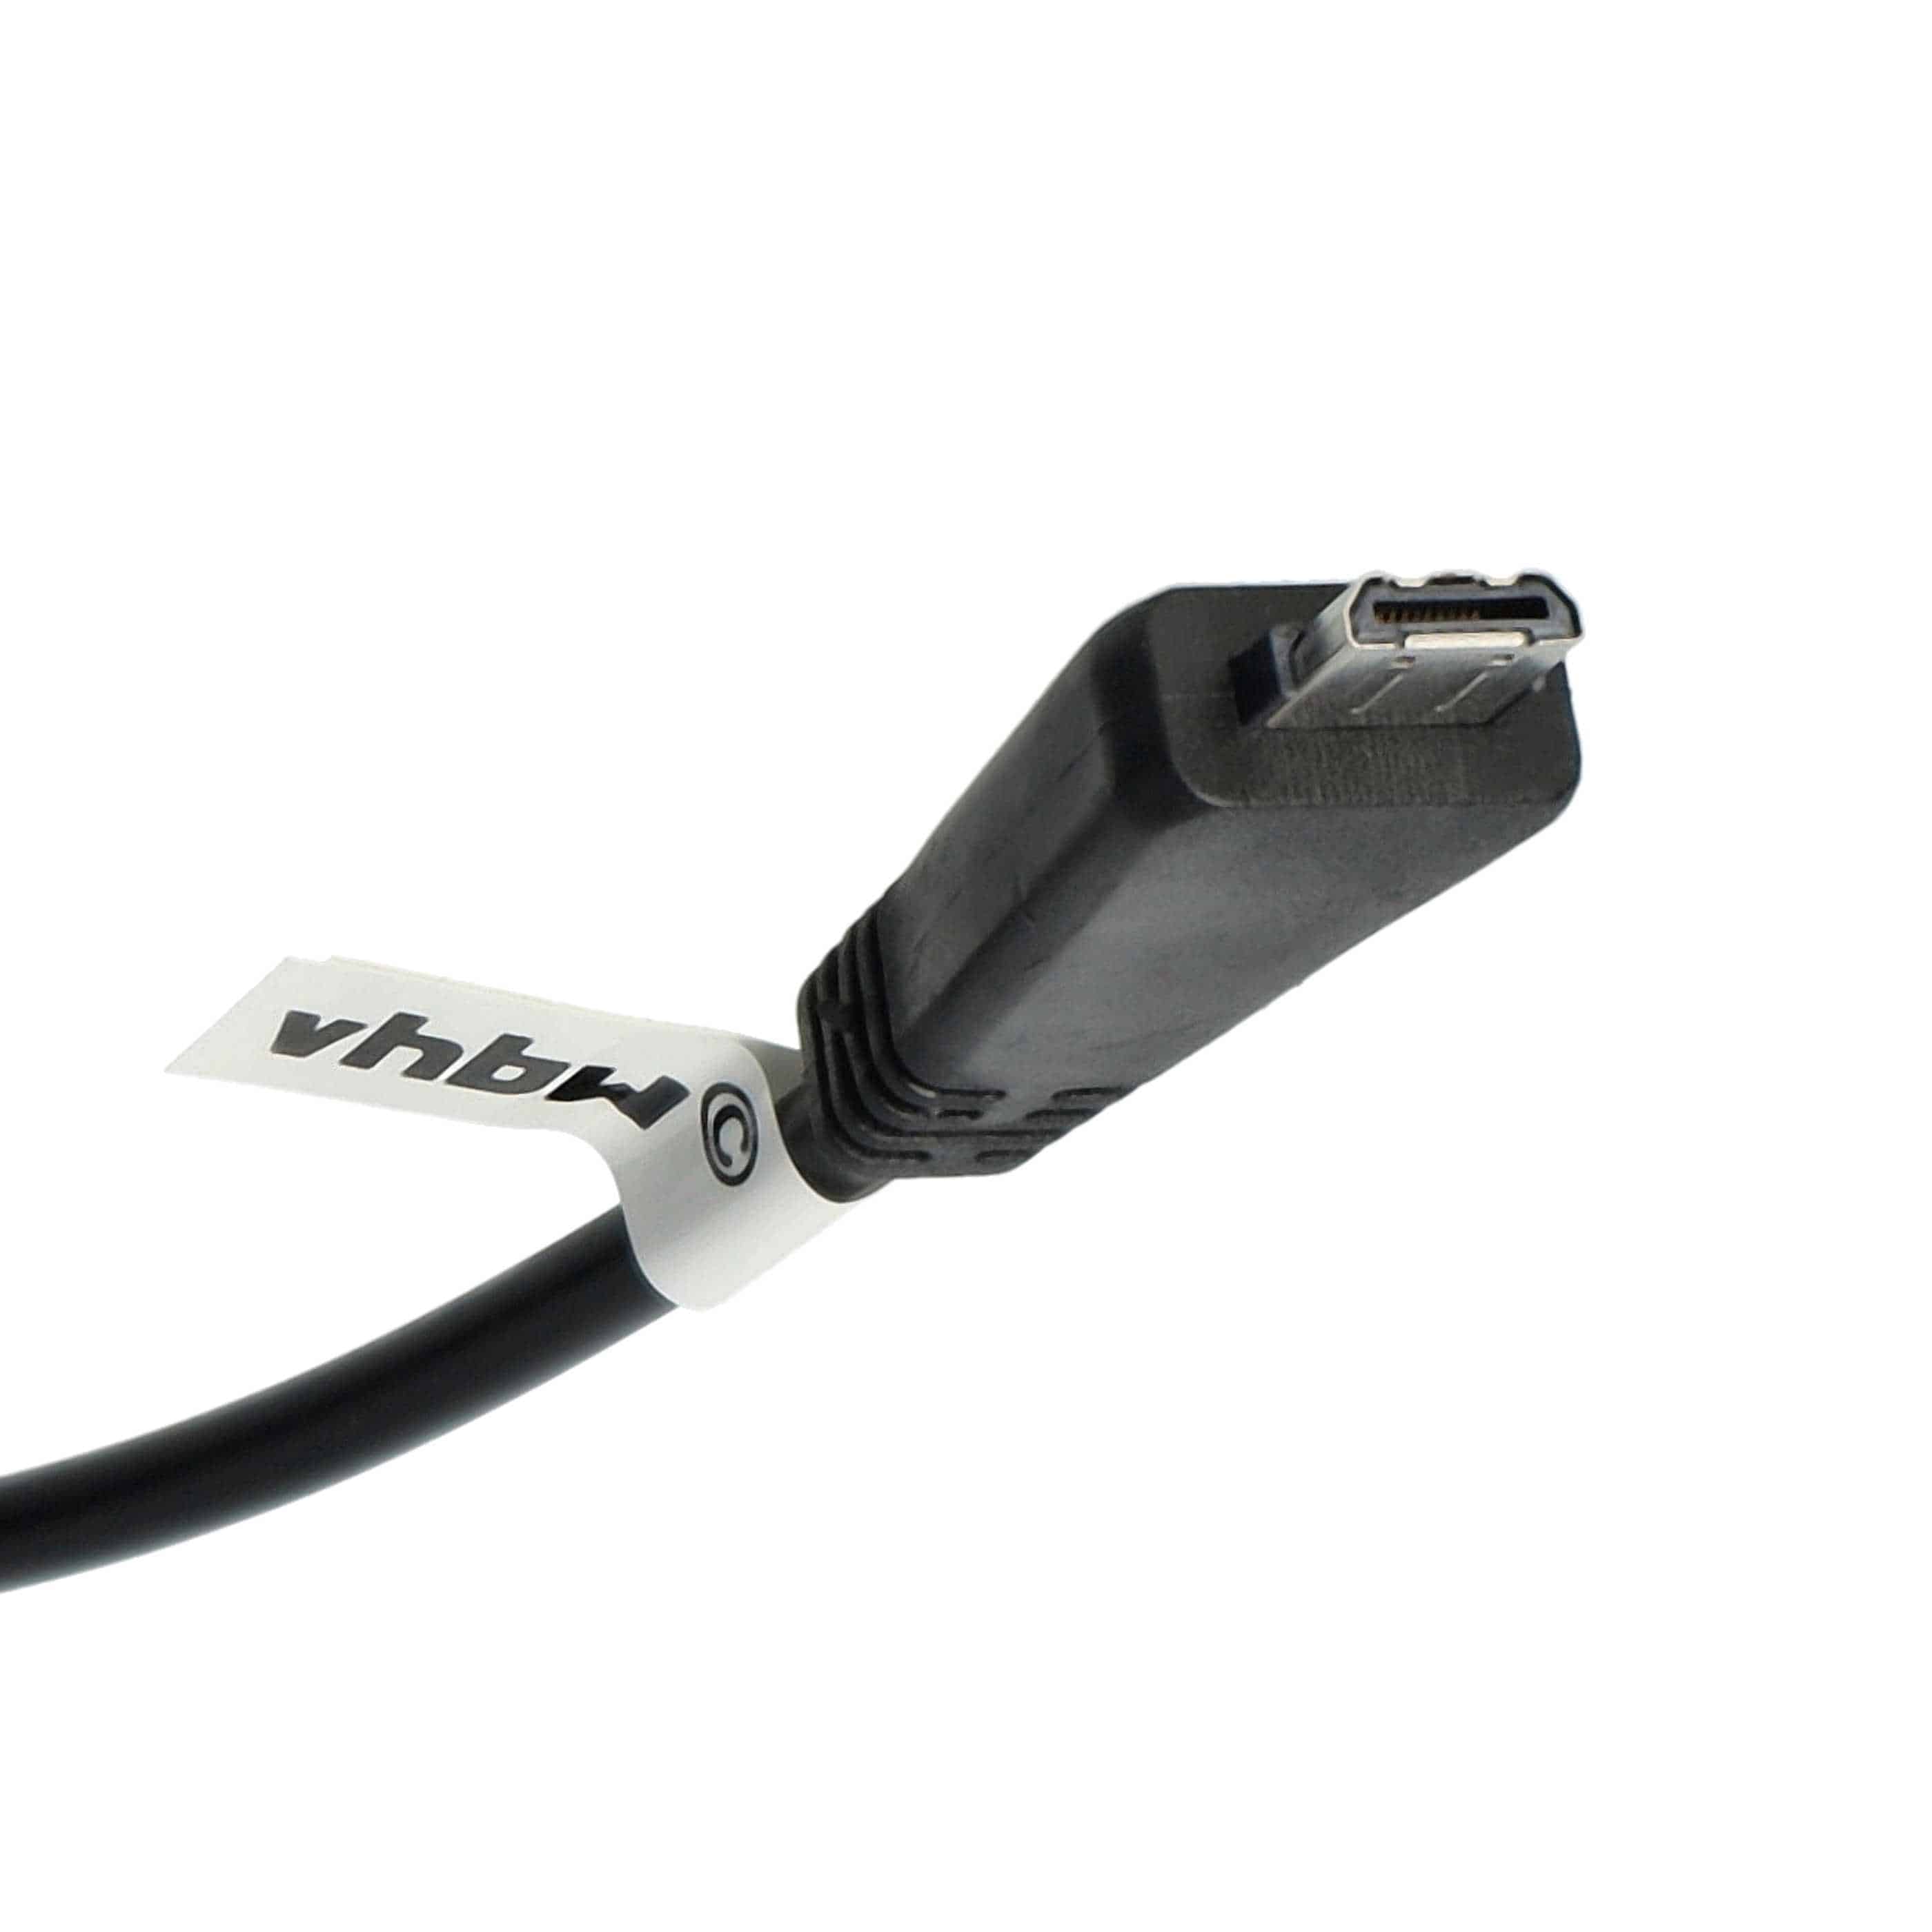 Kabel USB do aparatu Sony zamiennik Sony VMC-MD3 (bez funkcji AV) - 150 cm 